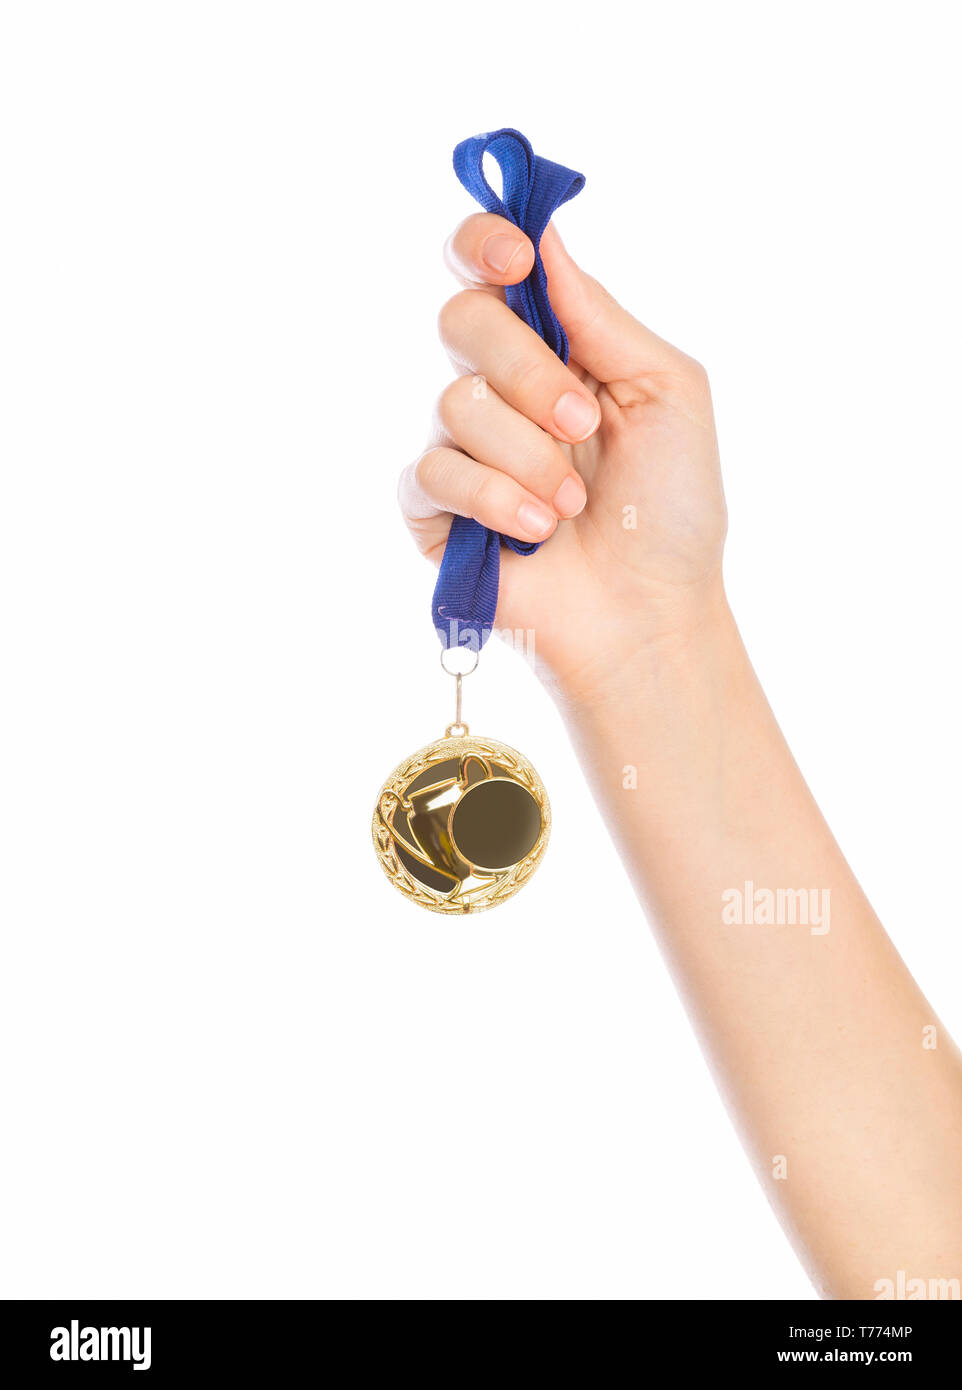 Mädchen Hand angehoben Holding Goldmedaille gegen weißen Hintergrund Award und Sieg Konzept Stockfoto